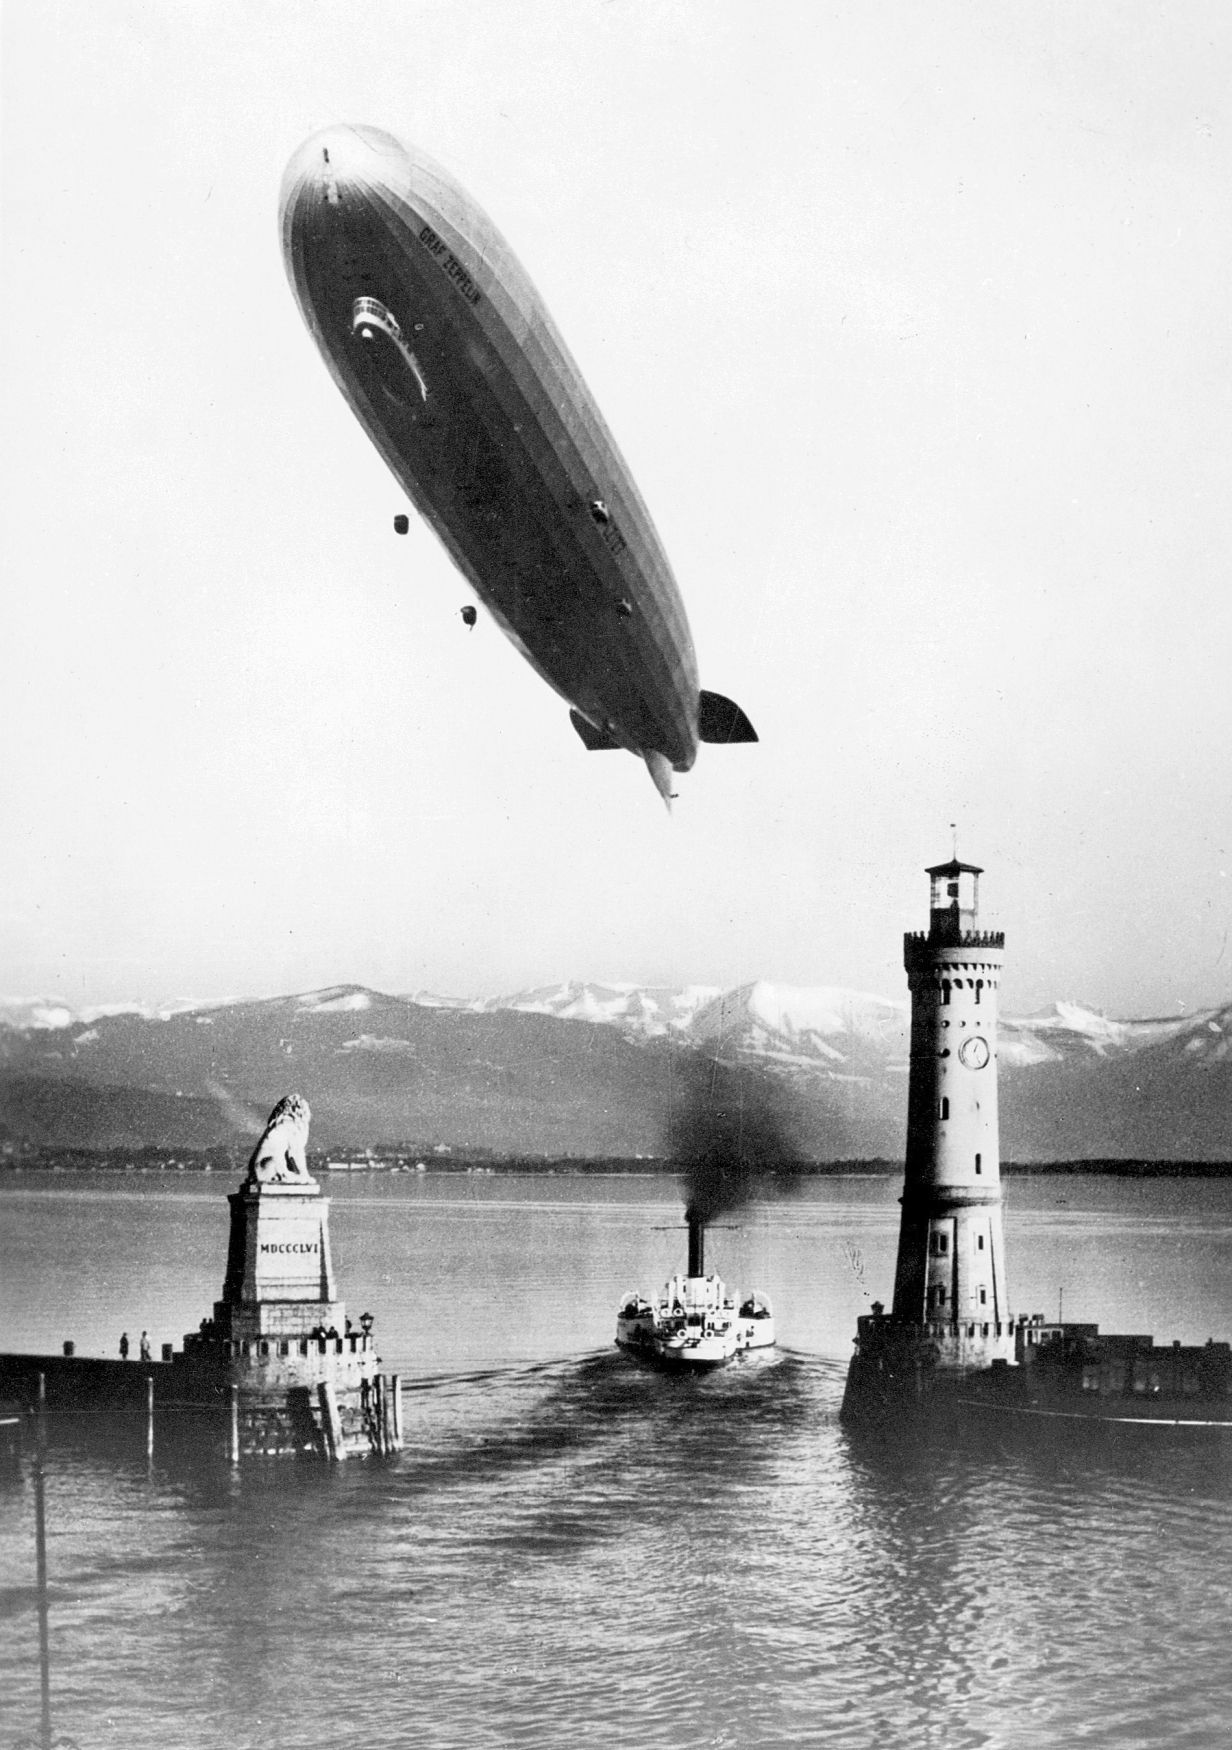 Fotogalerie / Vzducholoď Graf Zeppelin / Výročí 90. let vzniku / ČTK / 31